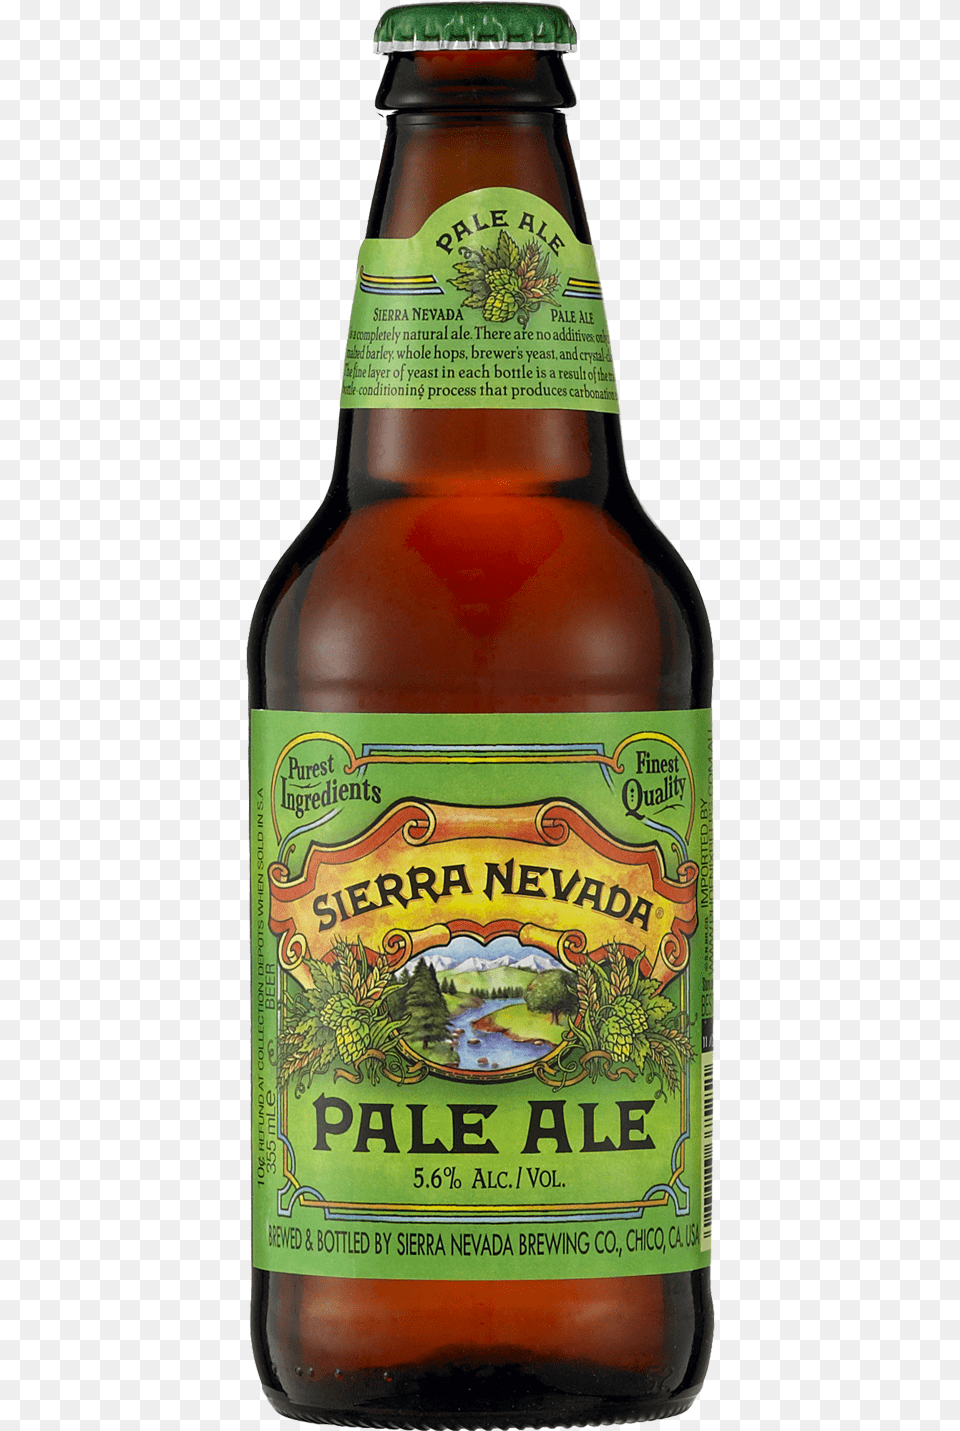 Sierra Nevada Pale Ale 355ml Sierra Nevada Pale Ale Bottle, Alcohol, Beer, Beer Bottle, Beverage Free Transparent Png